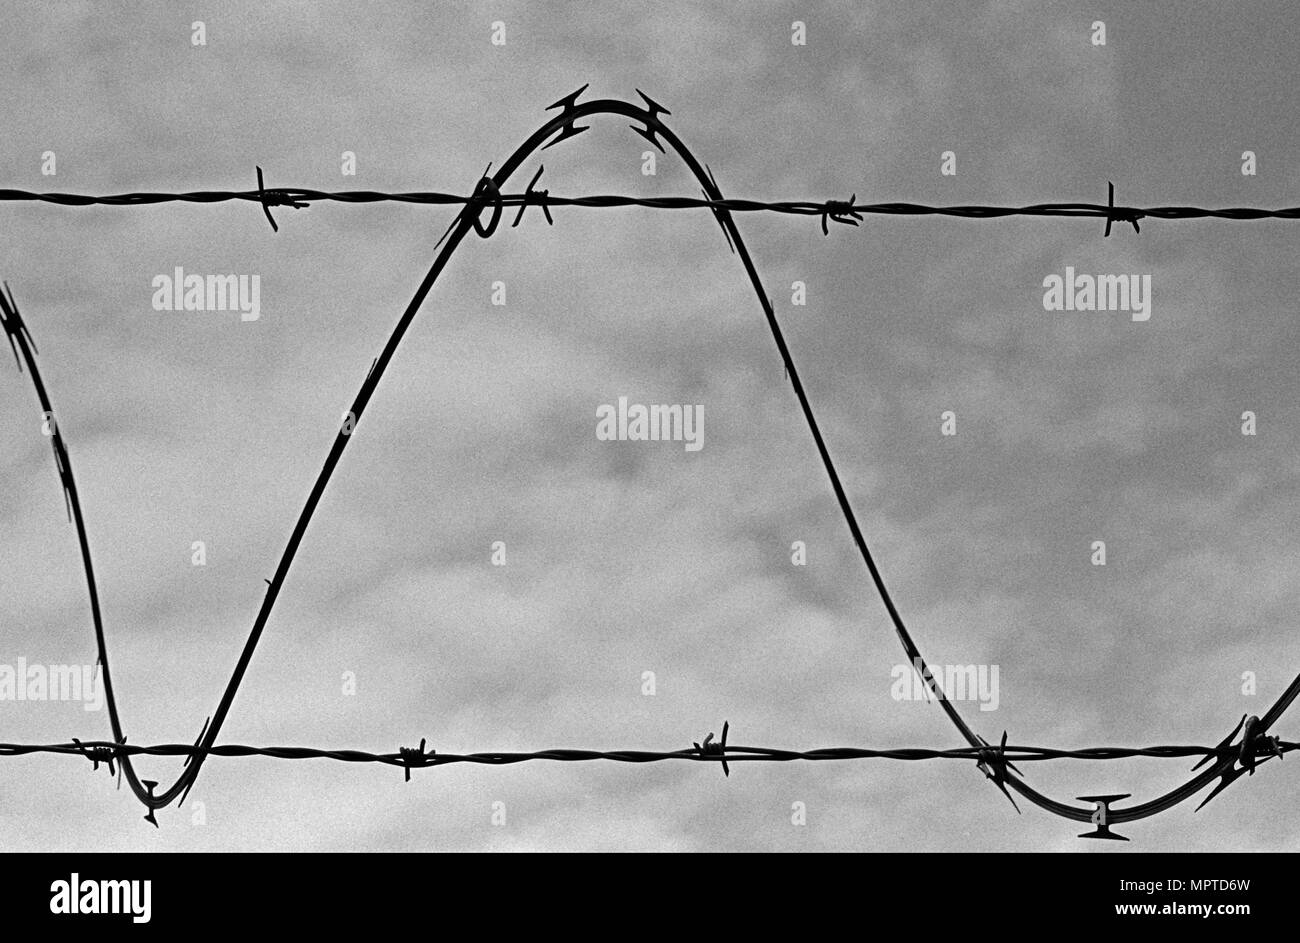 Ein Strang der Stacheldraht winden um zwei weitere Drähte und formen eine Sinuswelle gegen den Himmel. (Von schwarz/weiß Film gescannt.) Stockfoto